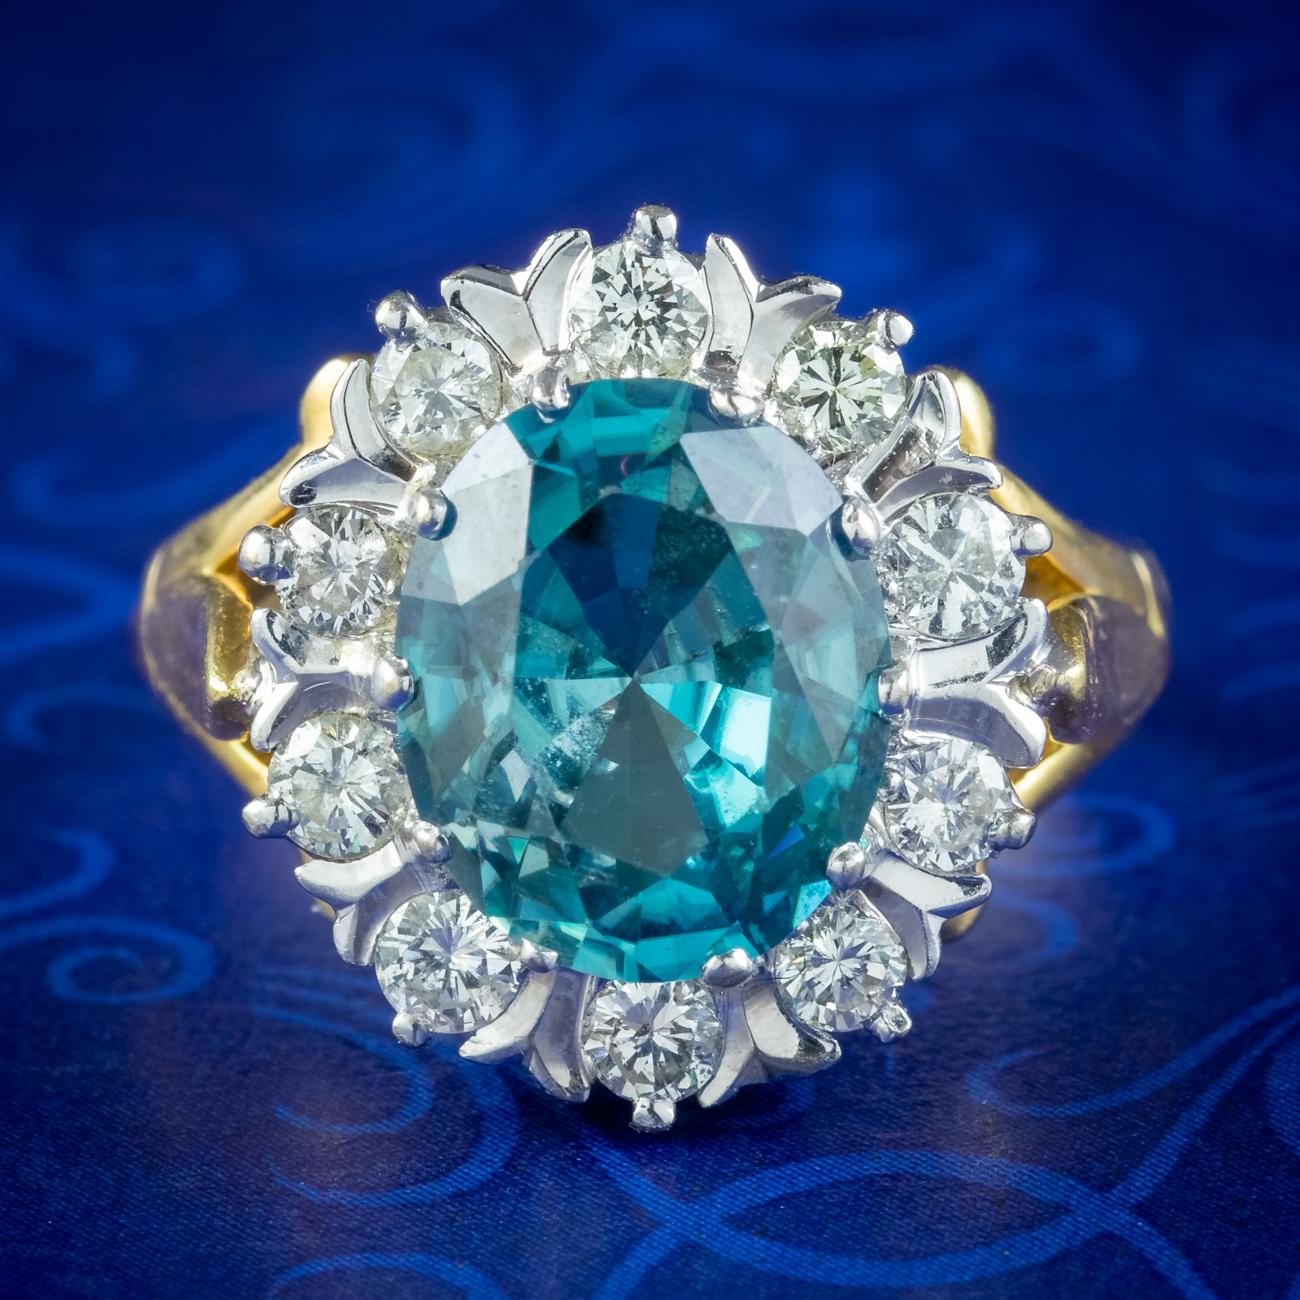 Ein spektakulärer Vintage-Cluster-Ring, gekrönt von einem funkelnden Zirkon im Ovalschliff mit tiefem blaugrünem Farbton. Er wiegt ca. 3 ct und wird von zehn funkelnden Diamanten im Brillantschliff umrahmt, die insgesamt ca. 0,80 ct